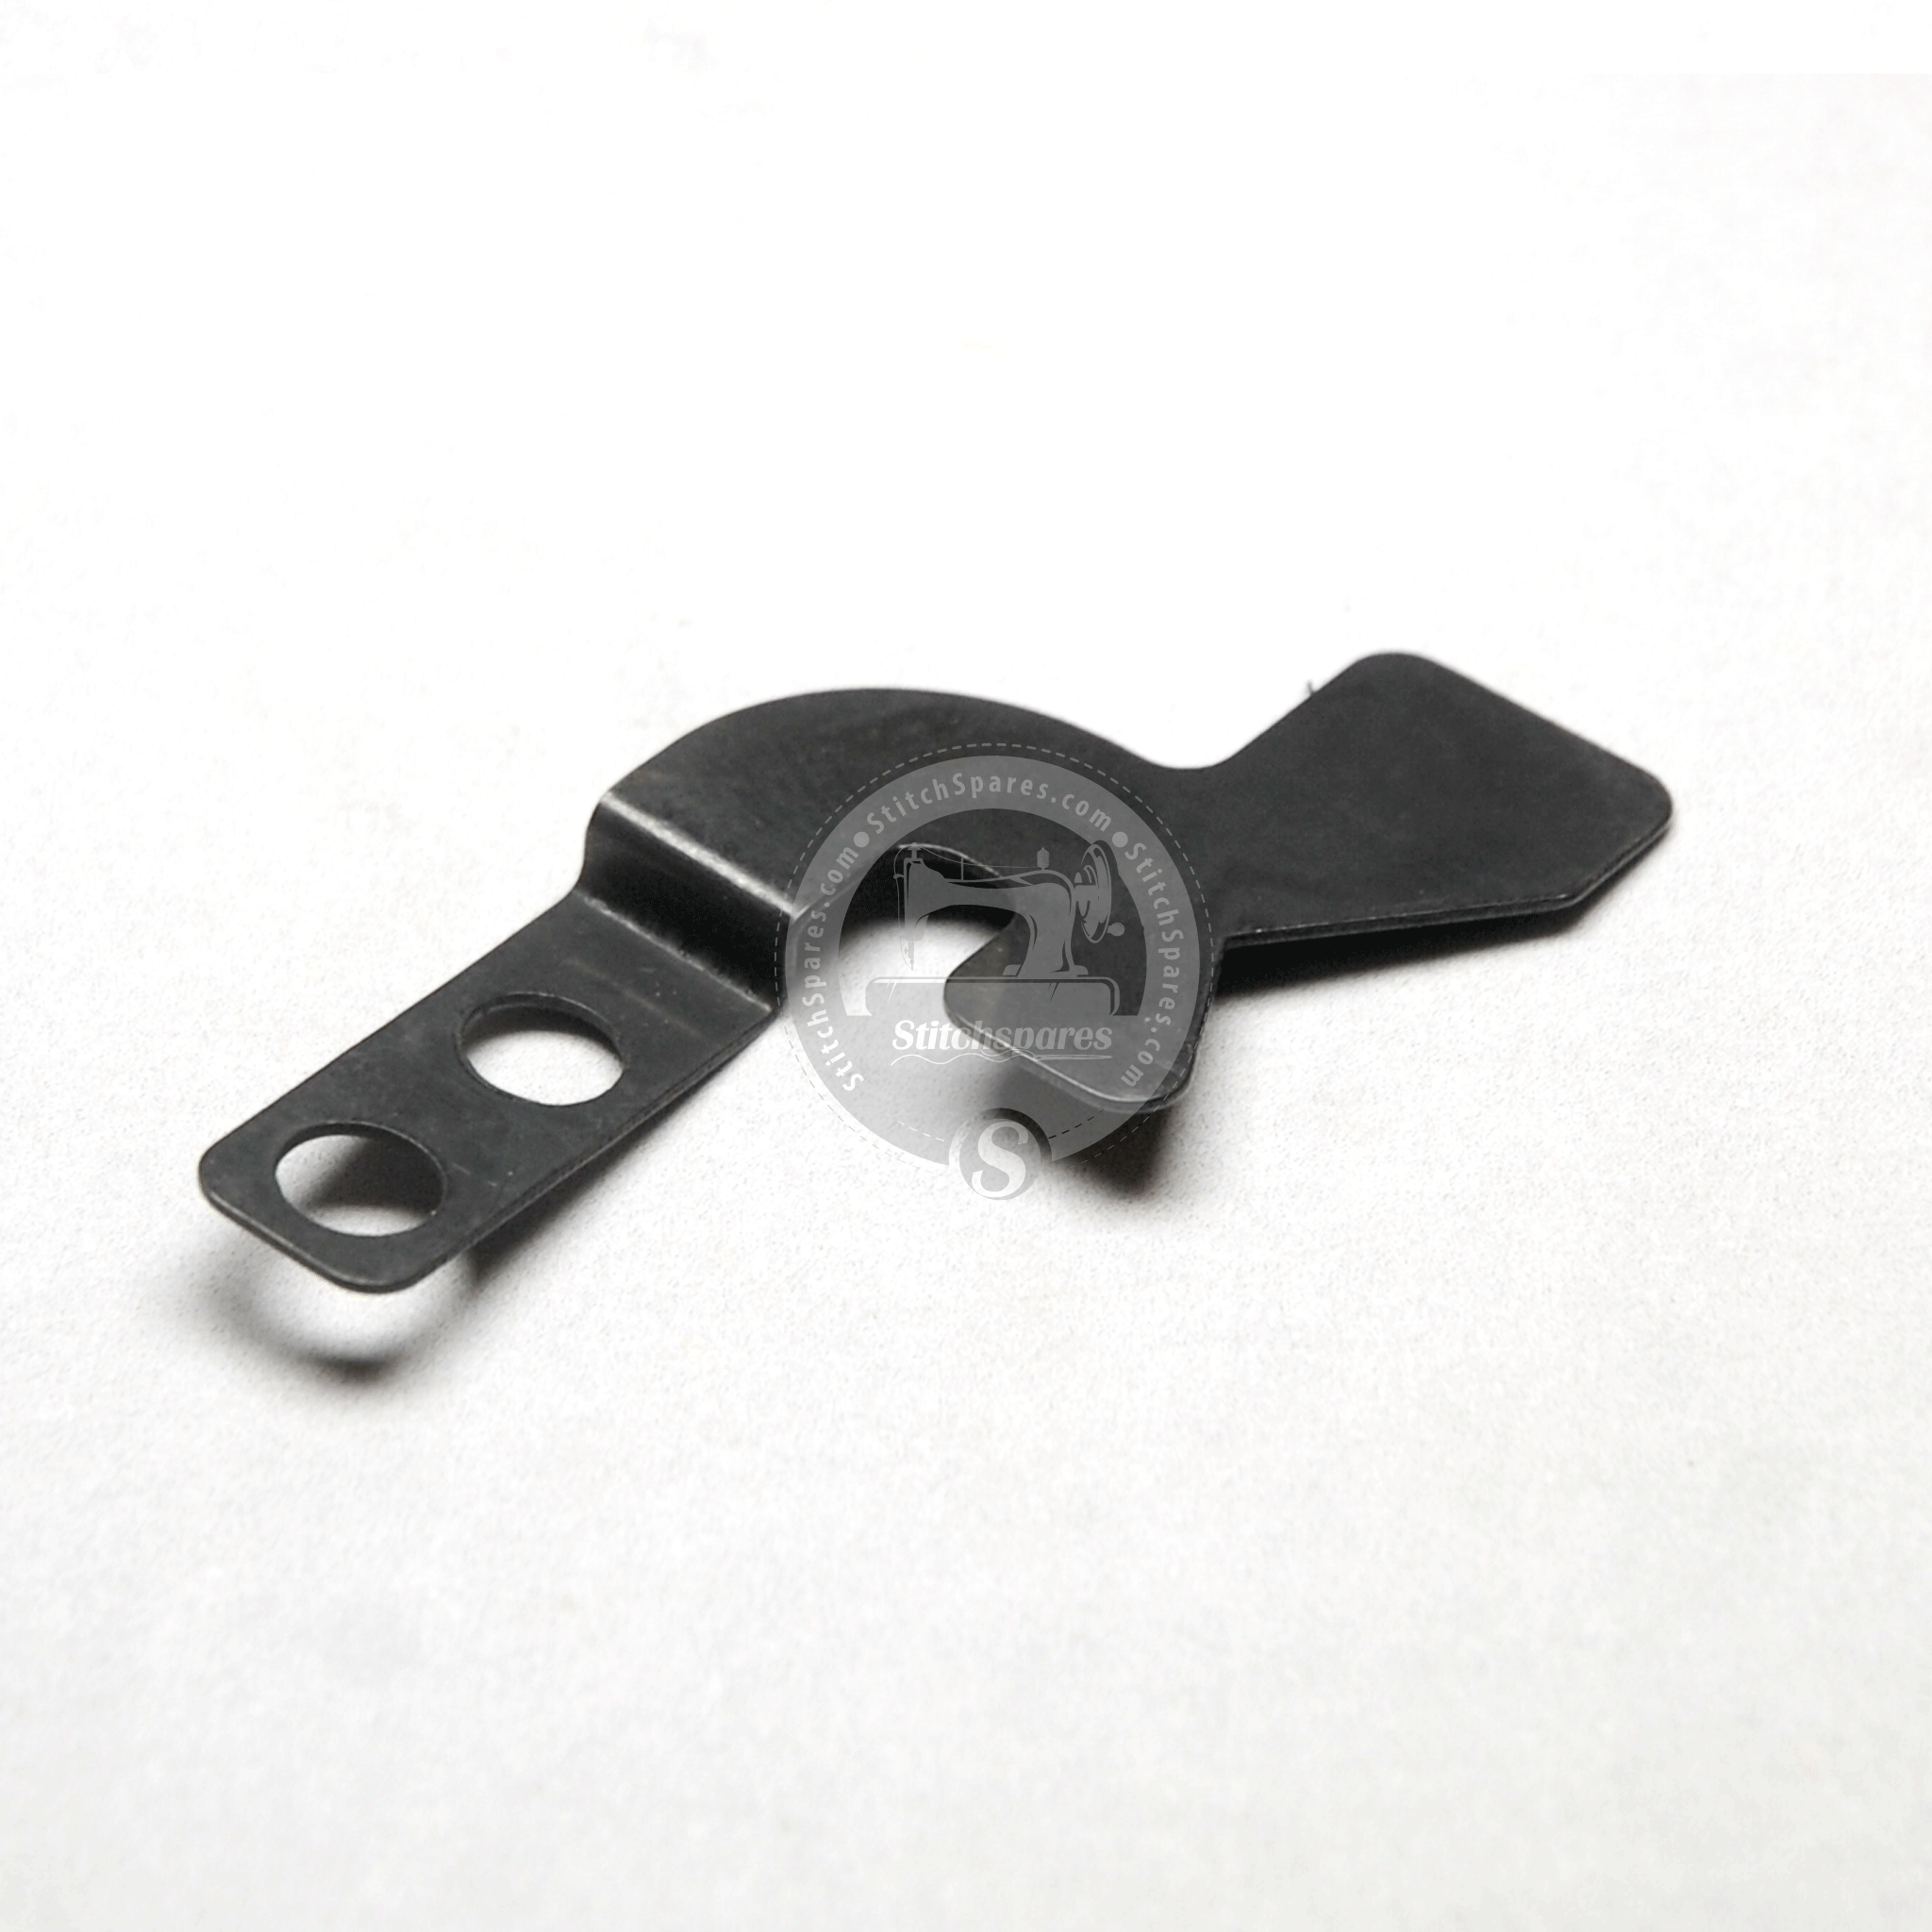 400-04310 Abrazadera BT Juki Lbh-1790 Comp. Pieza de repuesto para máquina de coser de ojal